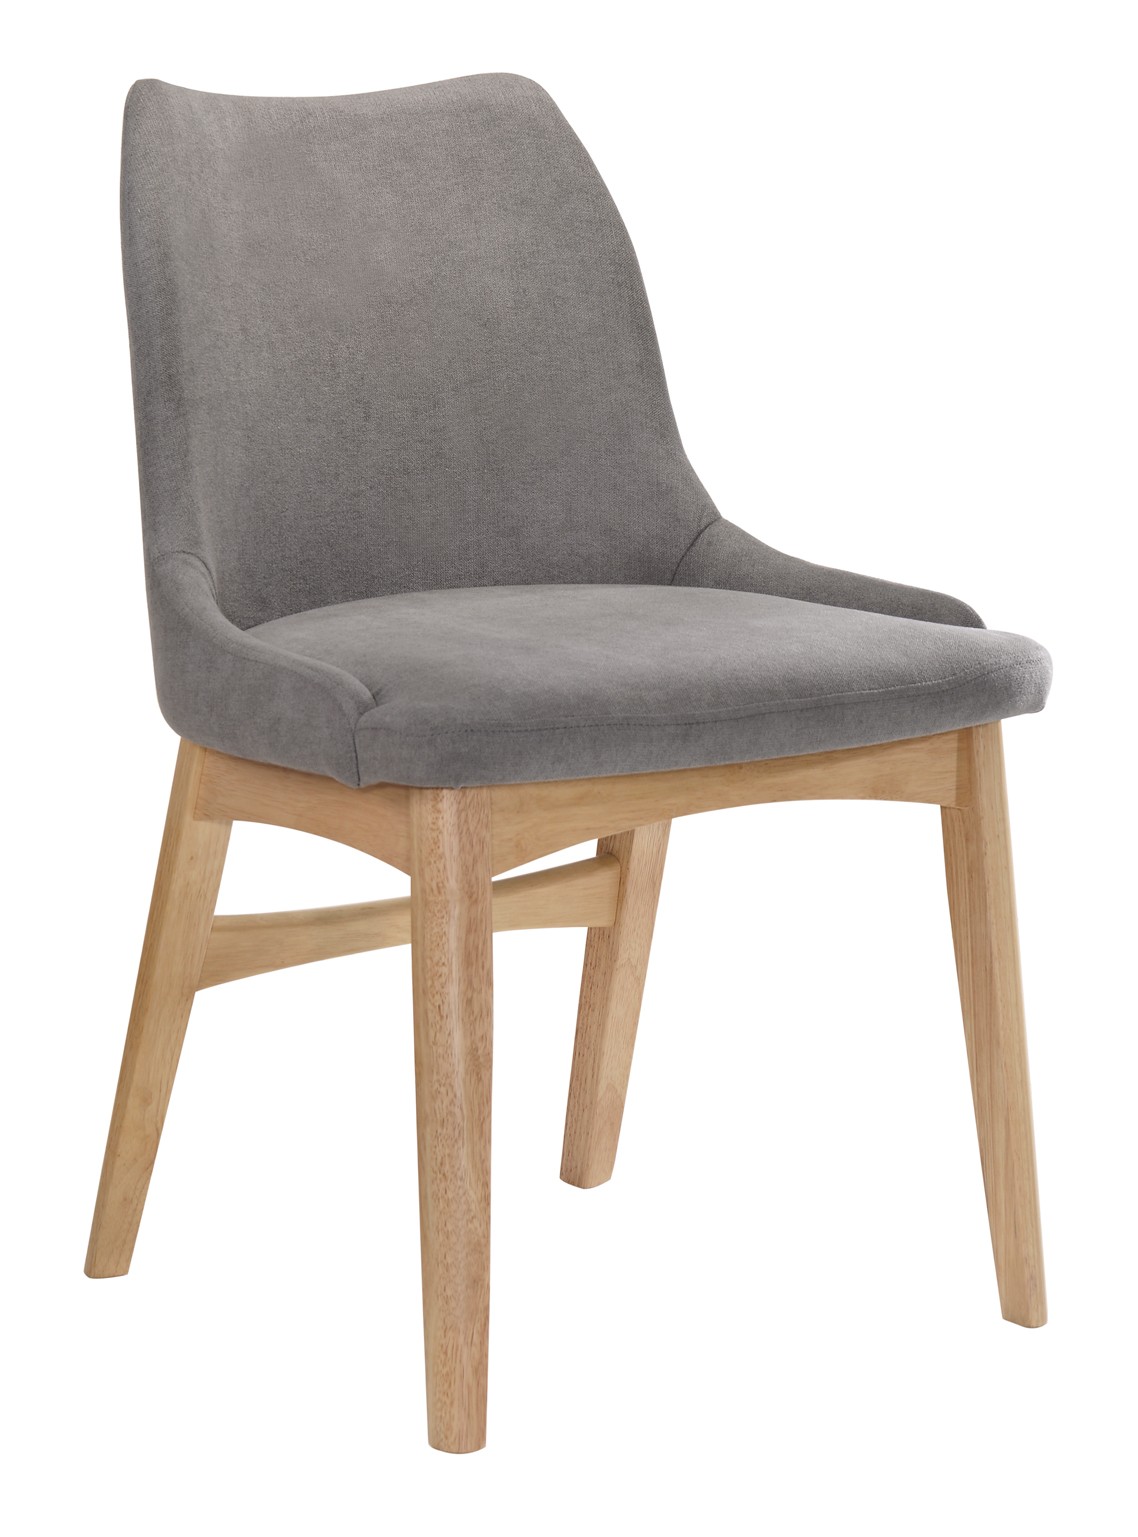 Levně Estila Moderní jídelní židle Nordica Clara z dubového masivu světle hnědé barvy se skandinávským šedým stylovým čalouněním 84cm